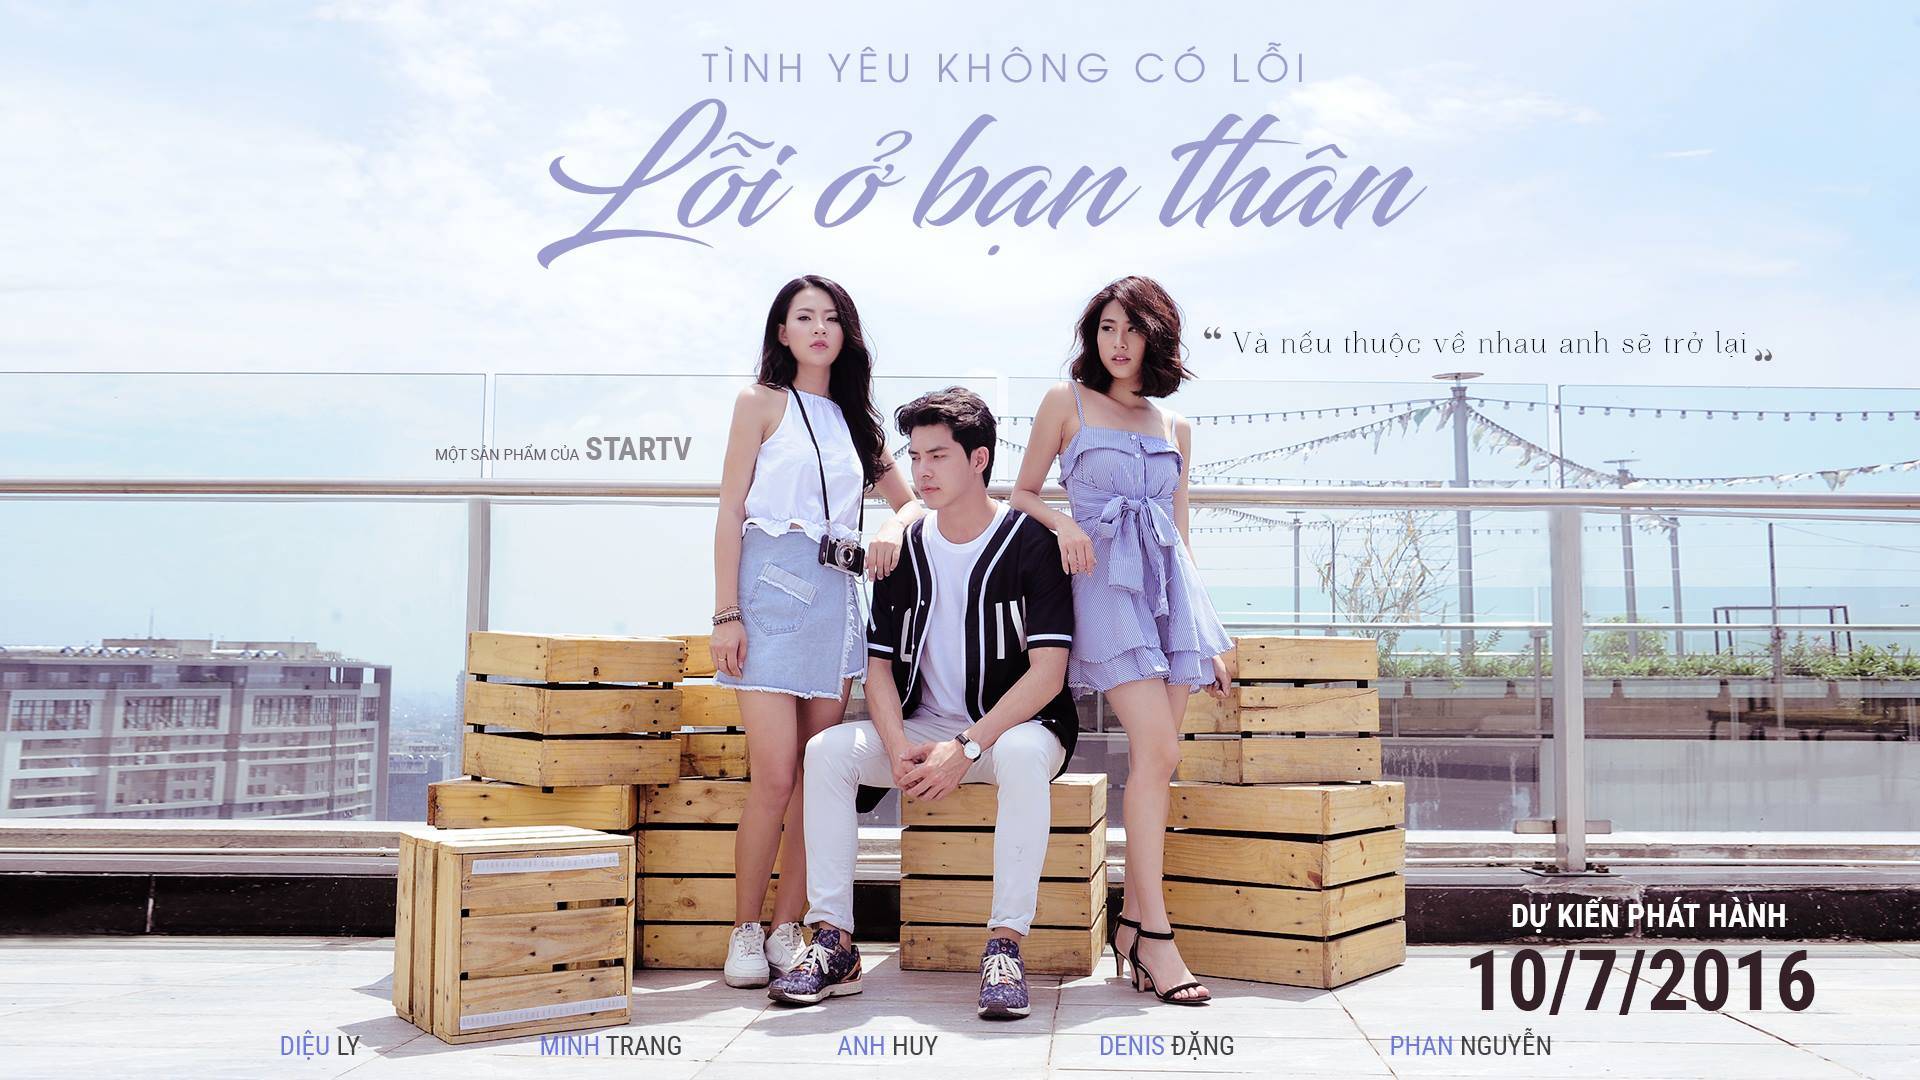 Tinh Yeu Ko Co Loi, Loi Tai Ban Than (2016)